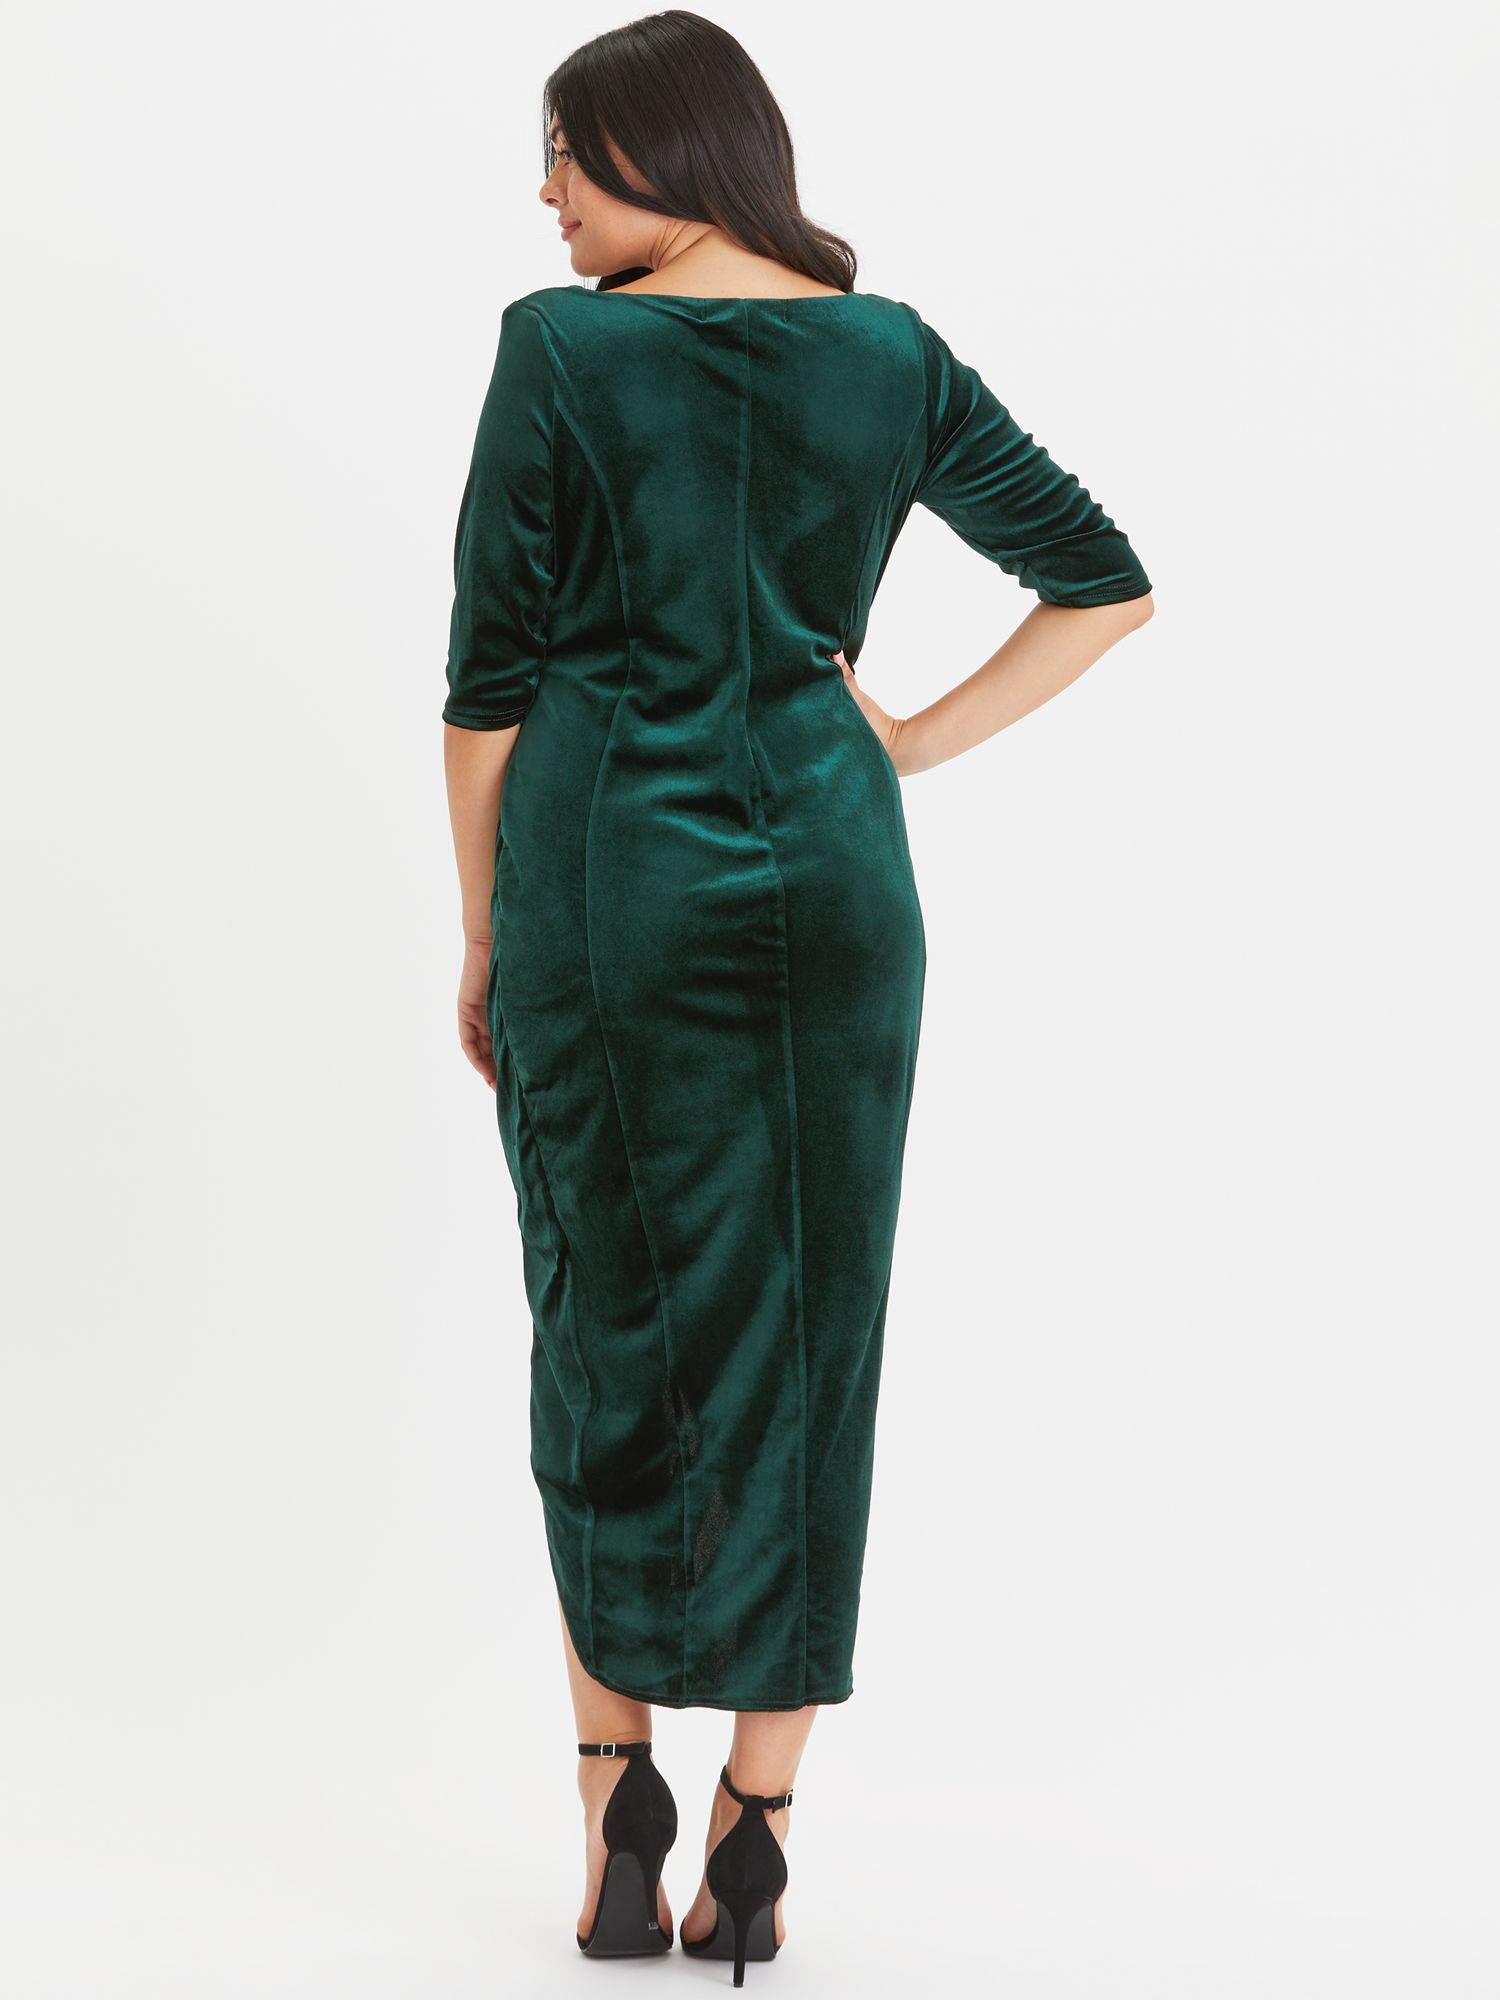 Scarlett & Jo Velvet Bodycon Dress, Green at John Lewis & Partners